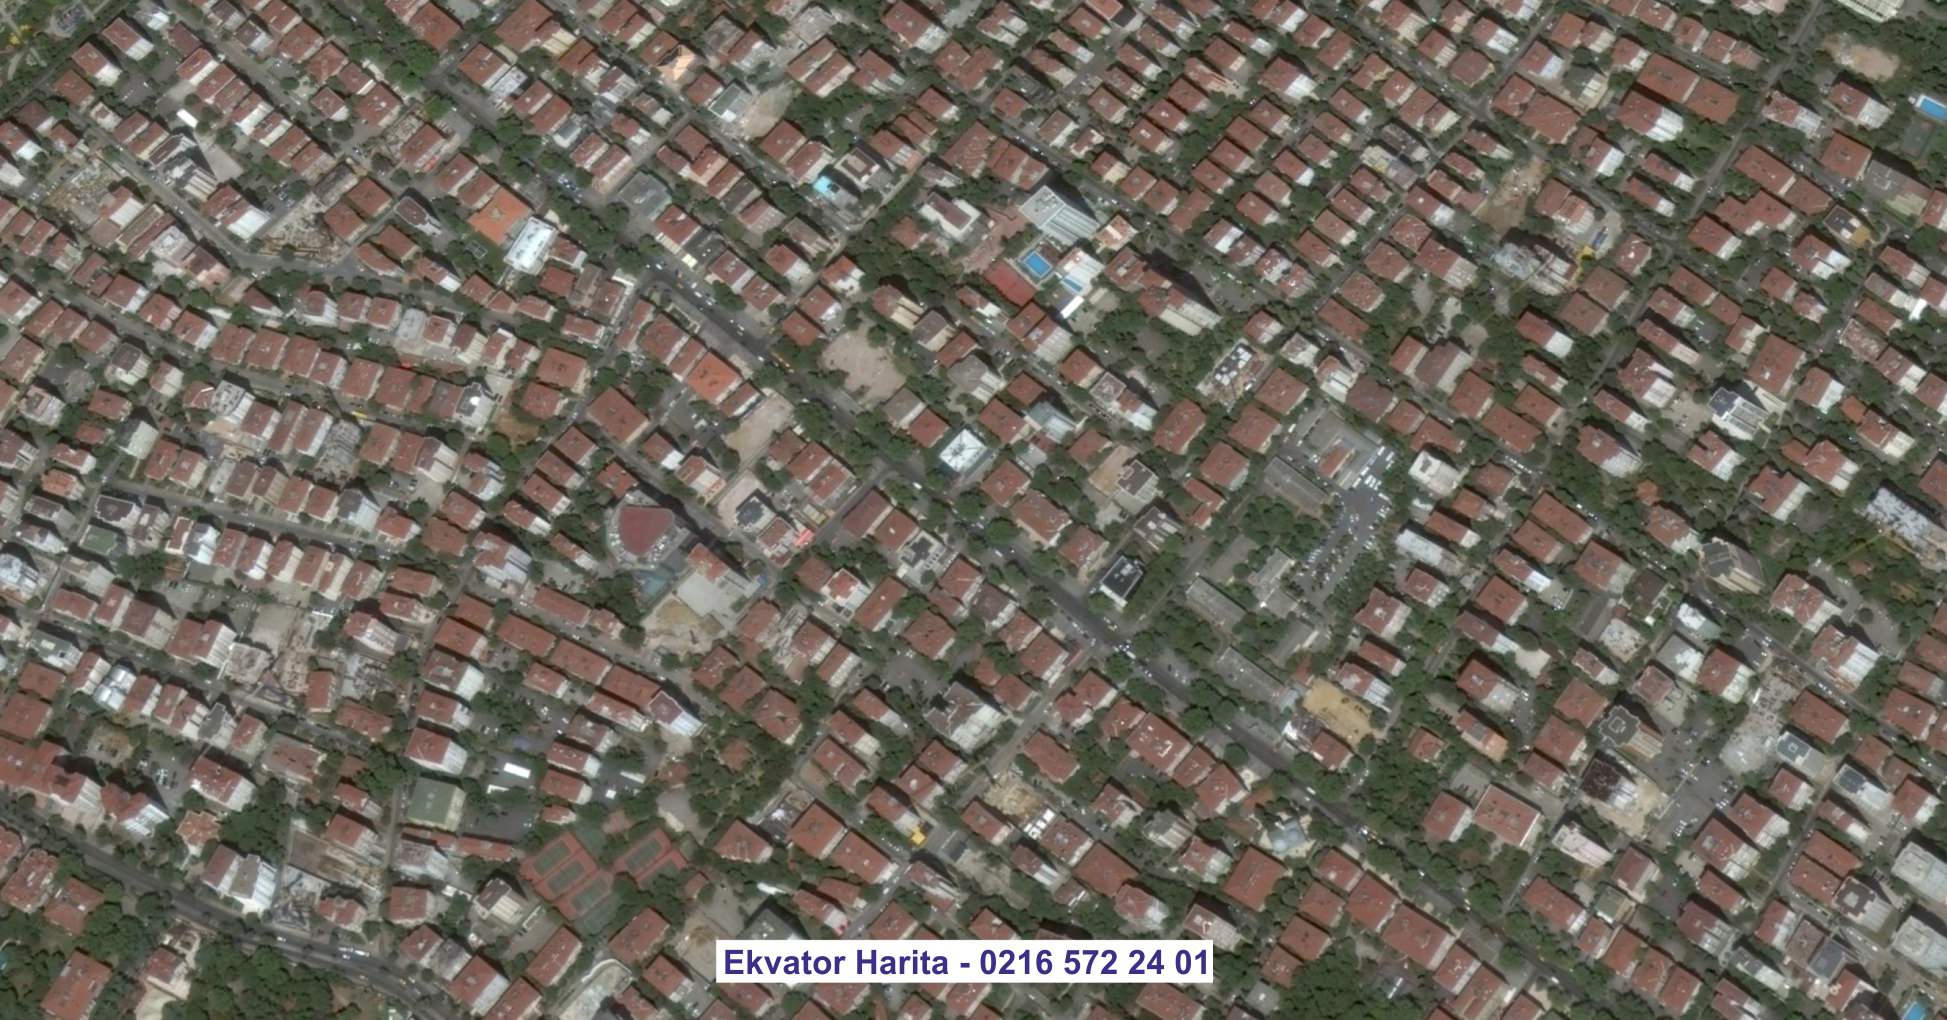 Bornova Uydu Görüntüsü Örnek Fotoğrafı